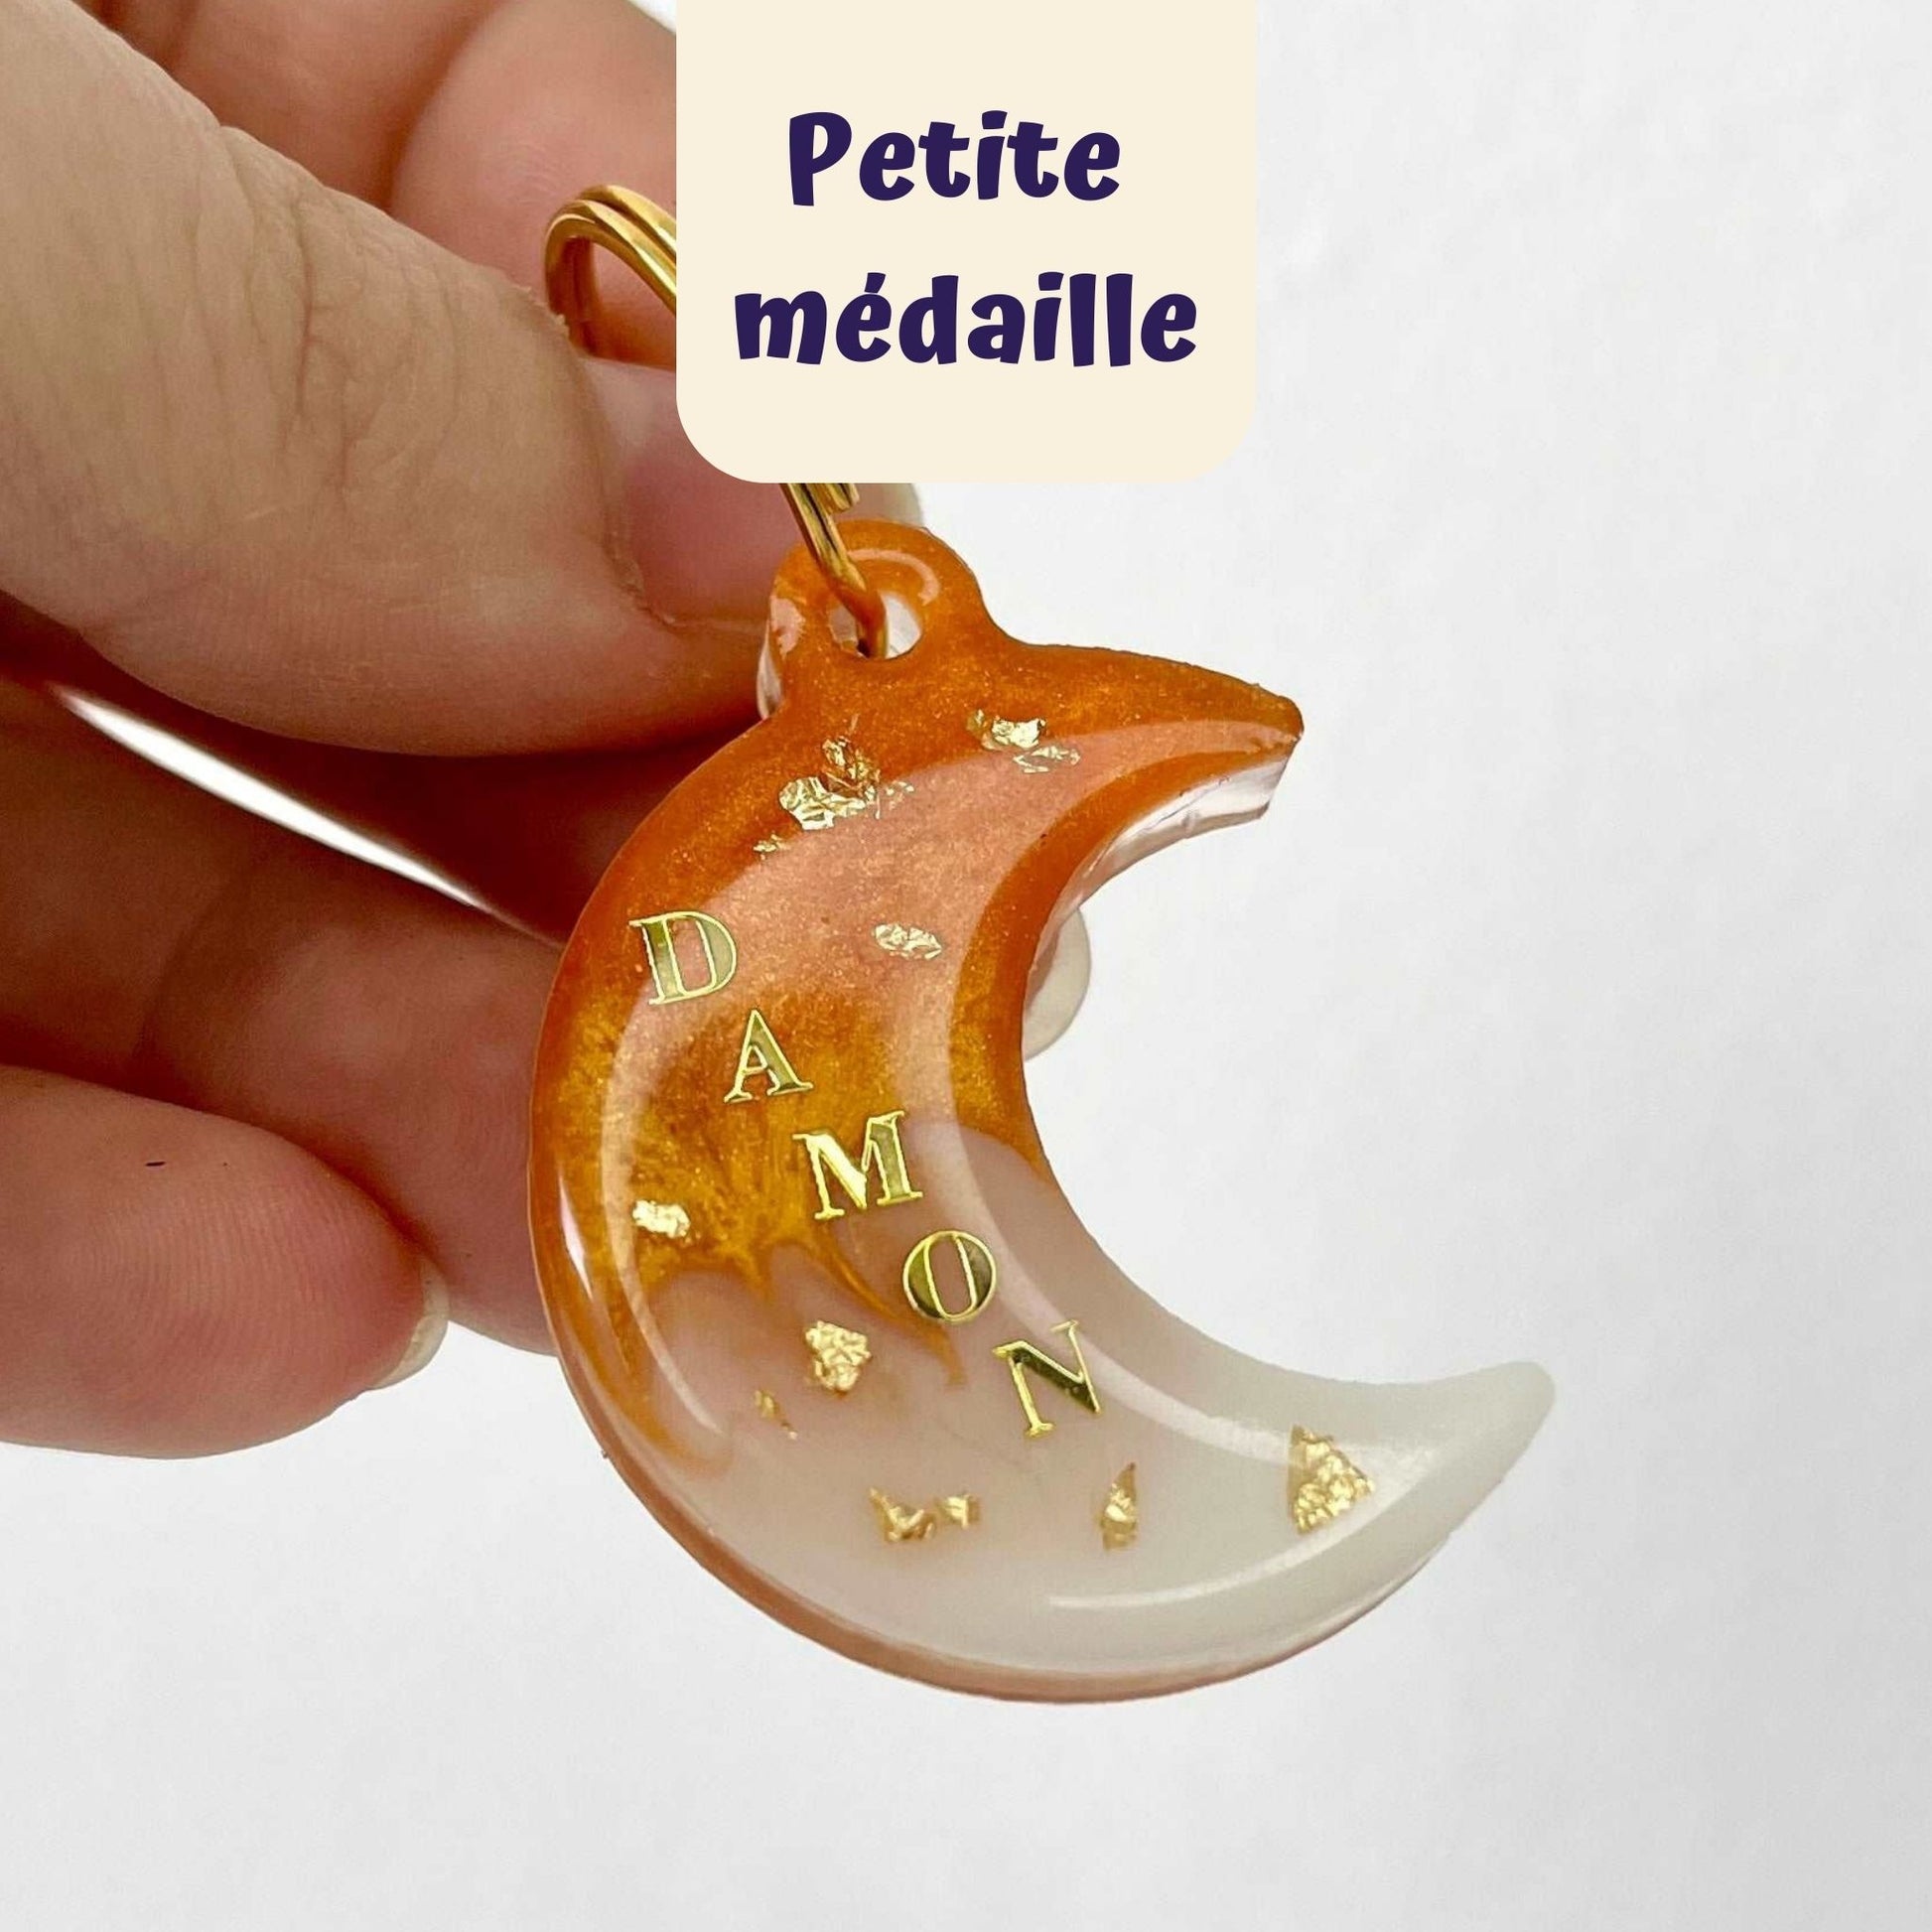 medaille personnalisable pour chat en forme de lune, couleur orange blanc